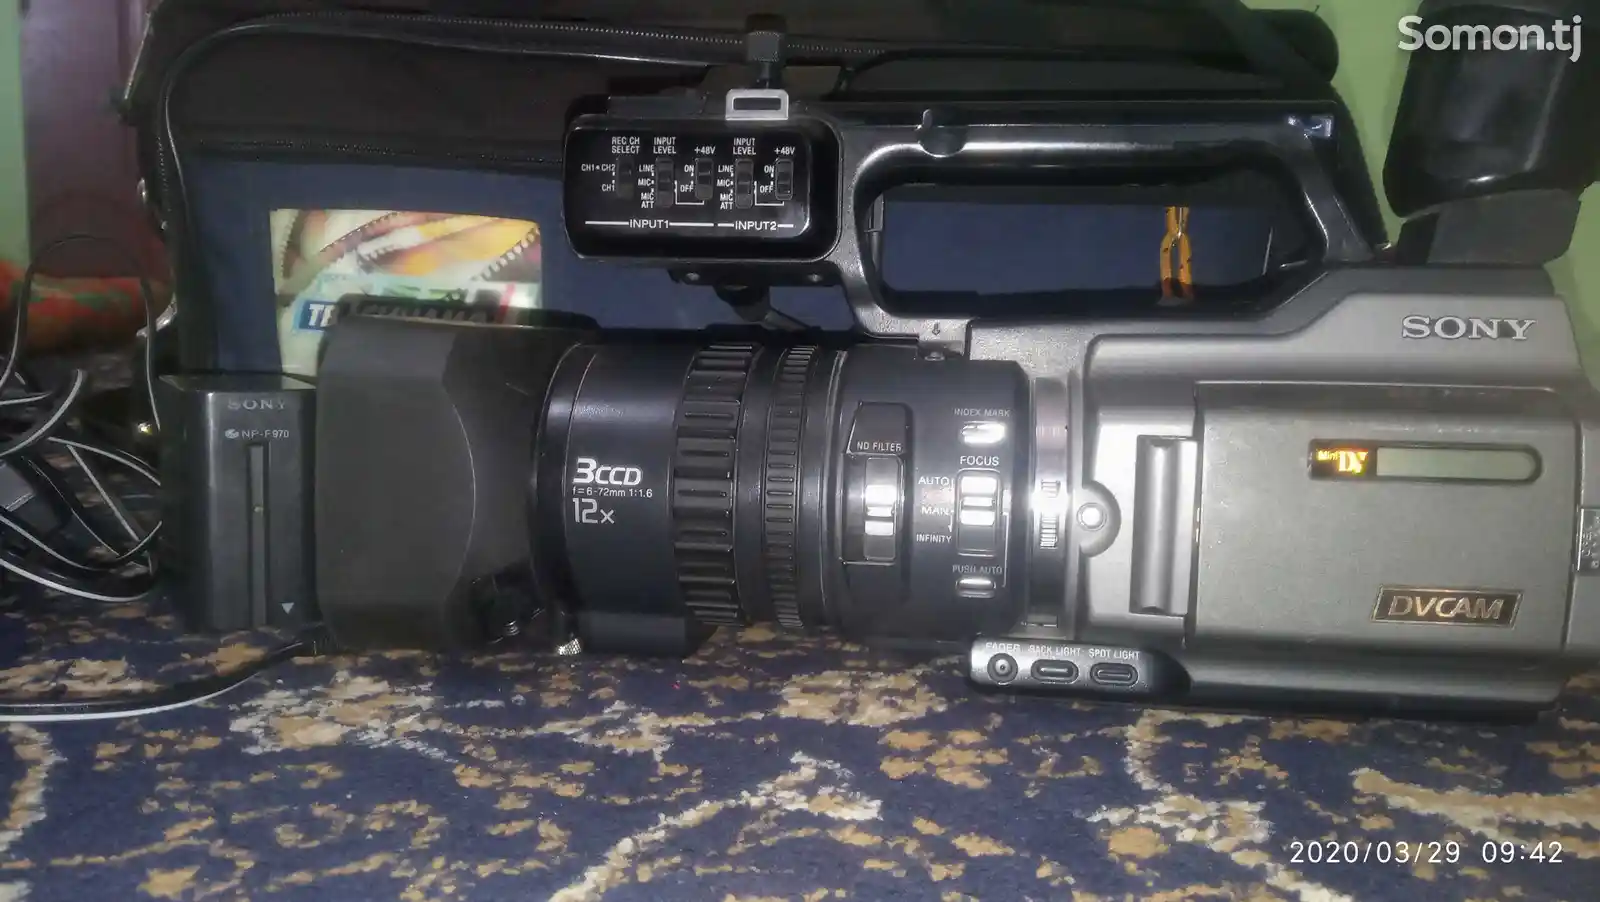 Видеокамера Sony DV-cam 170-3